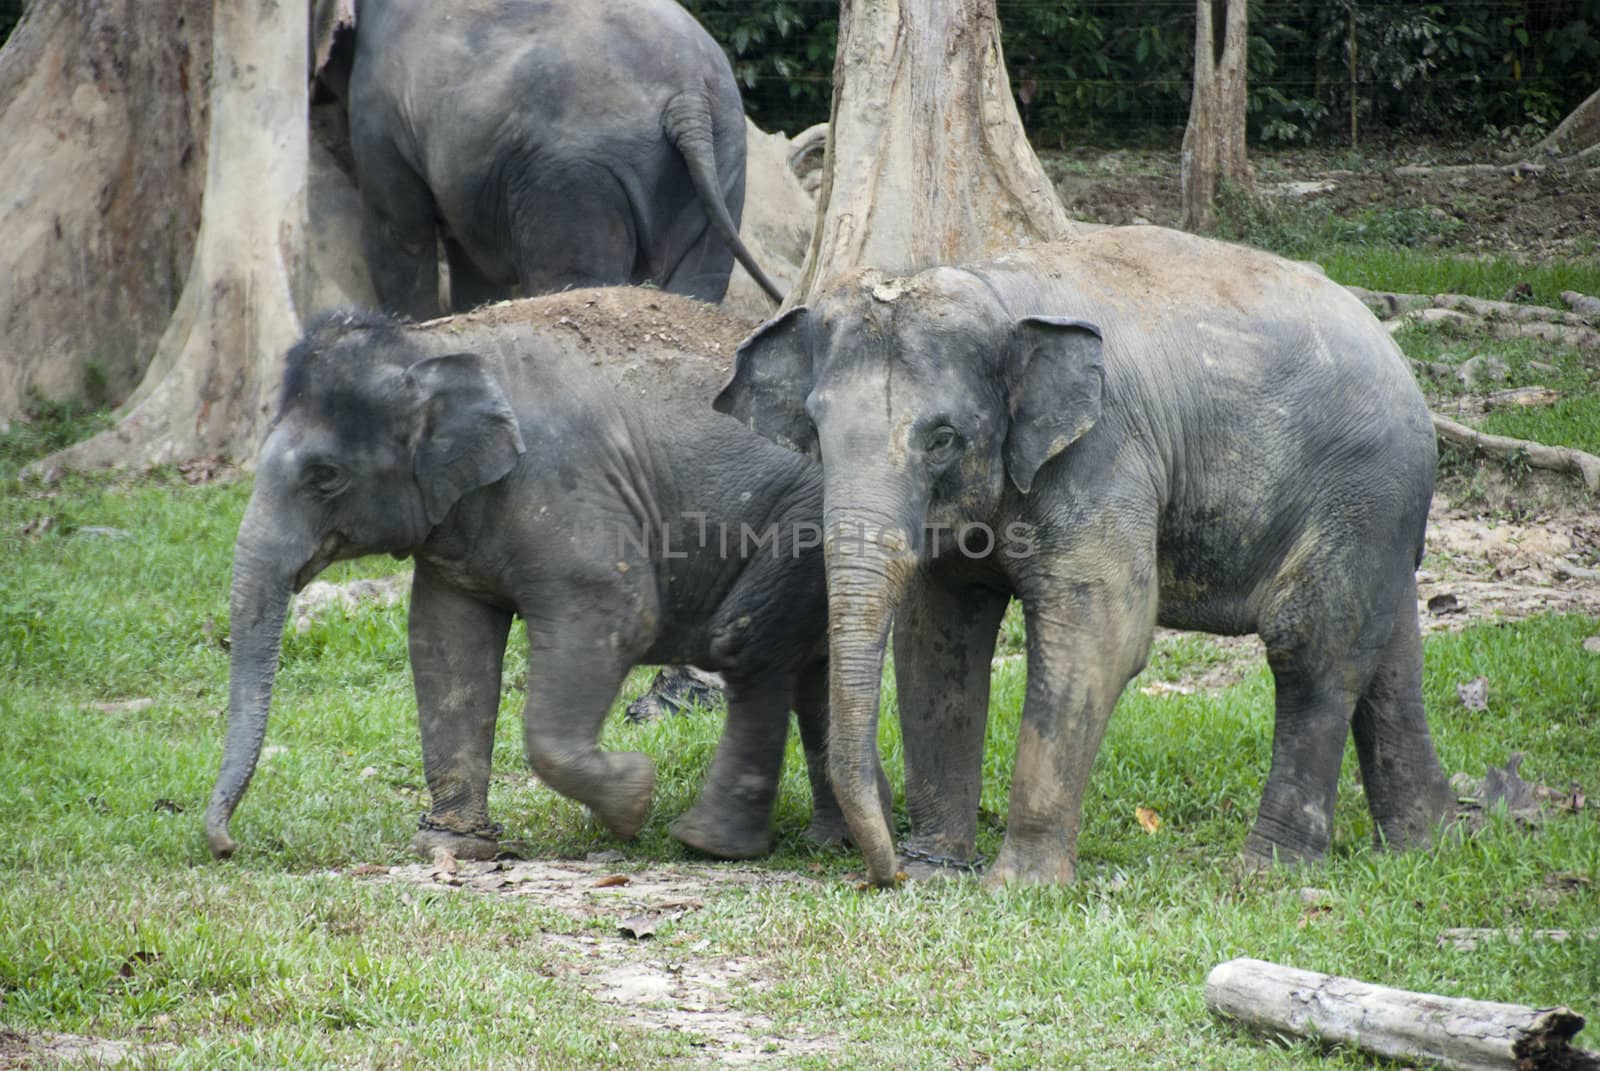 elephants in Malaysia Kuala gandah